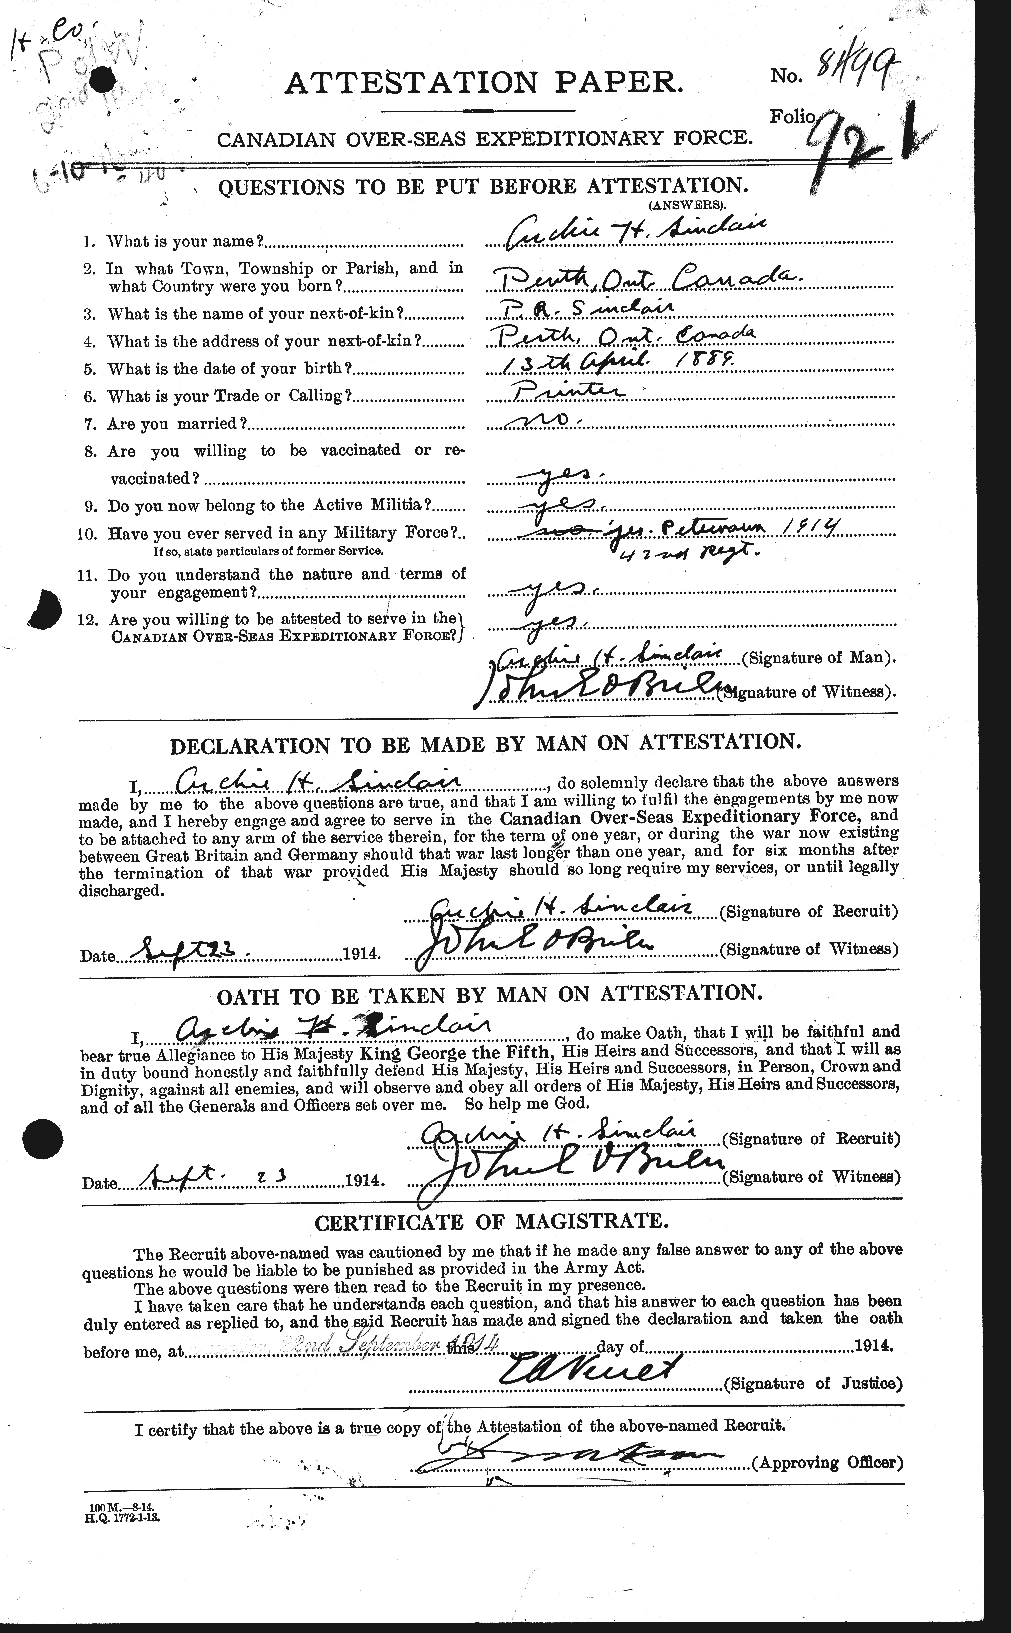 Dossiers du Personnel de la Première Guerre mondiale - CEC 096661a